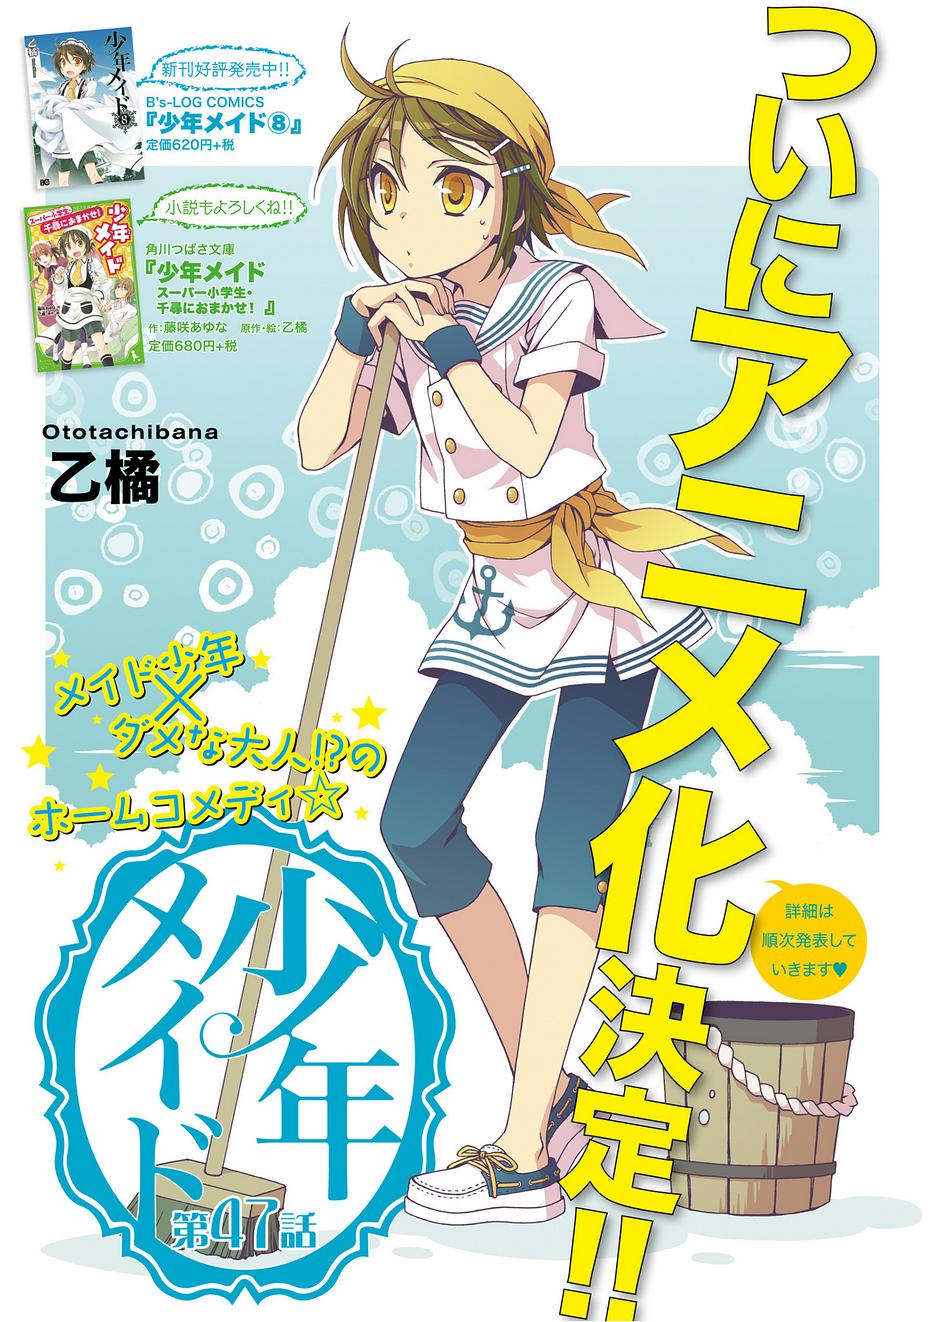 少年メイド 22話b Manga Townまんがタウン まんがまとめ 無料コミック漫画 ネタバレ